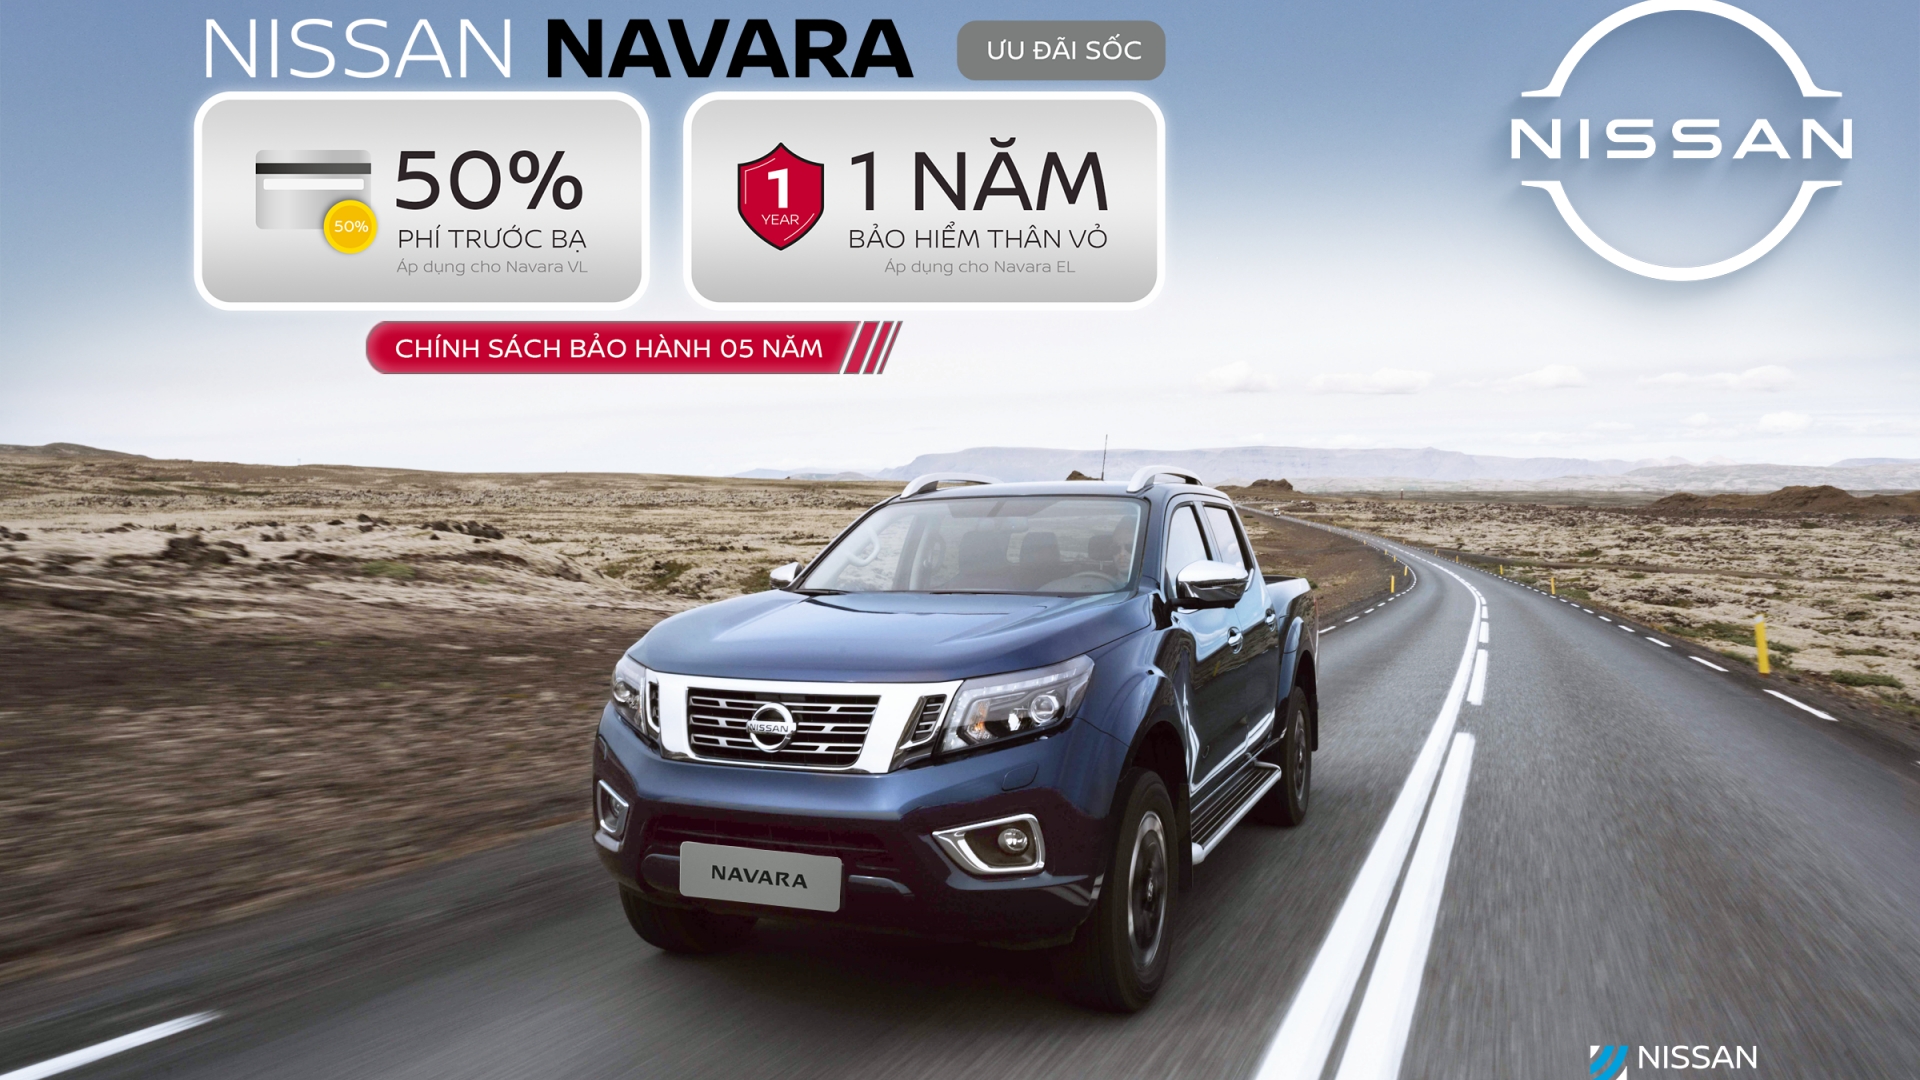 Nissan Việt Nam ưu đãi 50% phí trước bạ đến hết 30/4